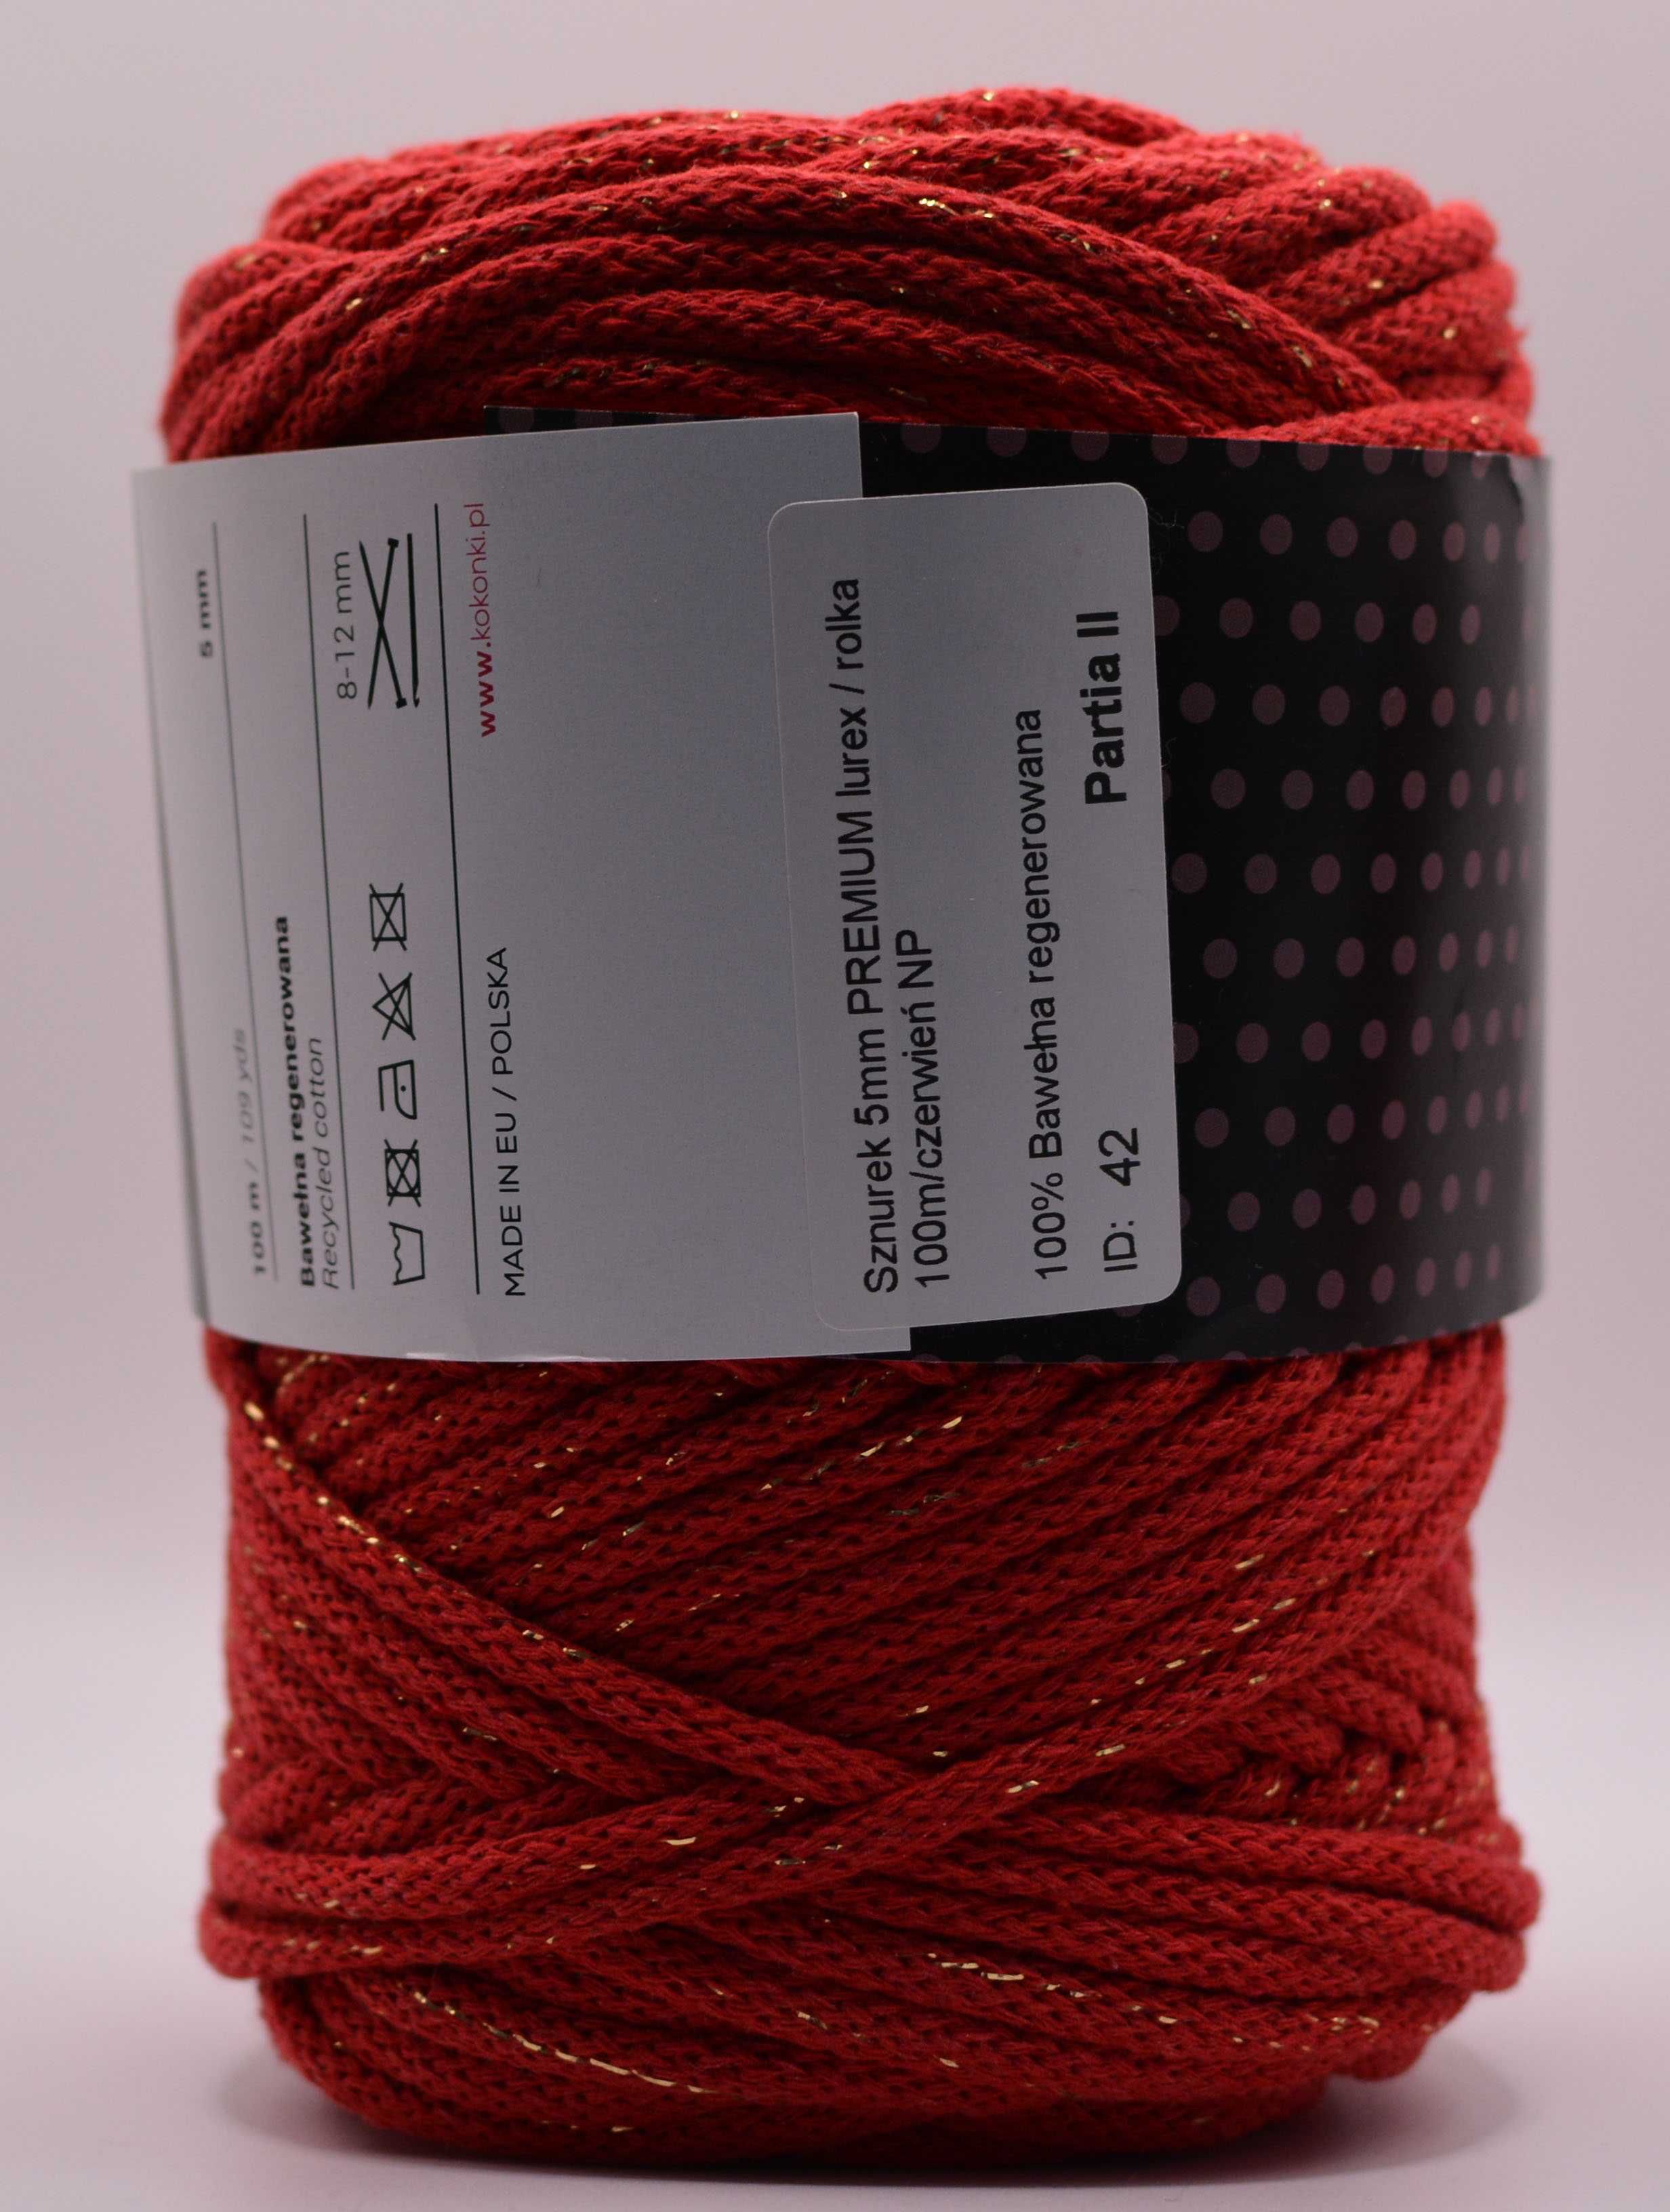 PREMIUM sznurek bawełniany by KOKONKI 5mm macrama 100m czerwony lurex